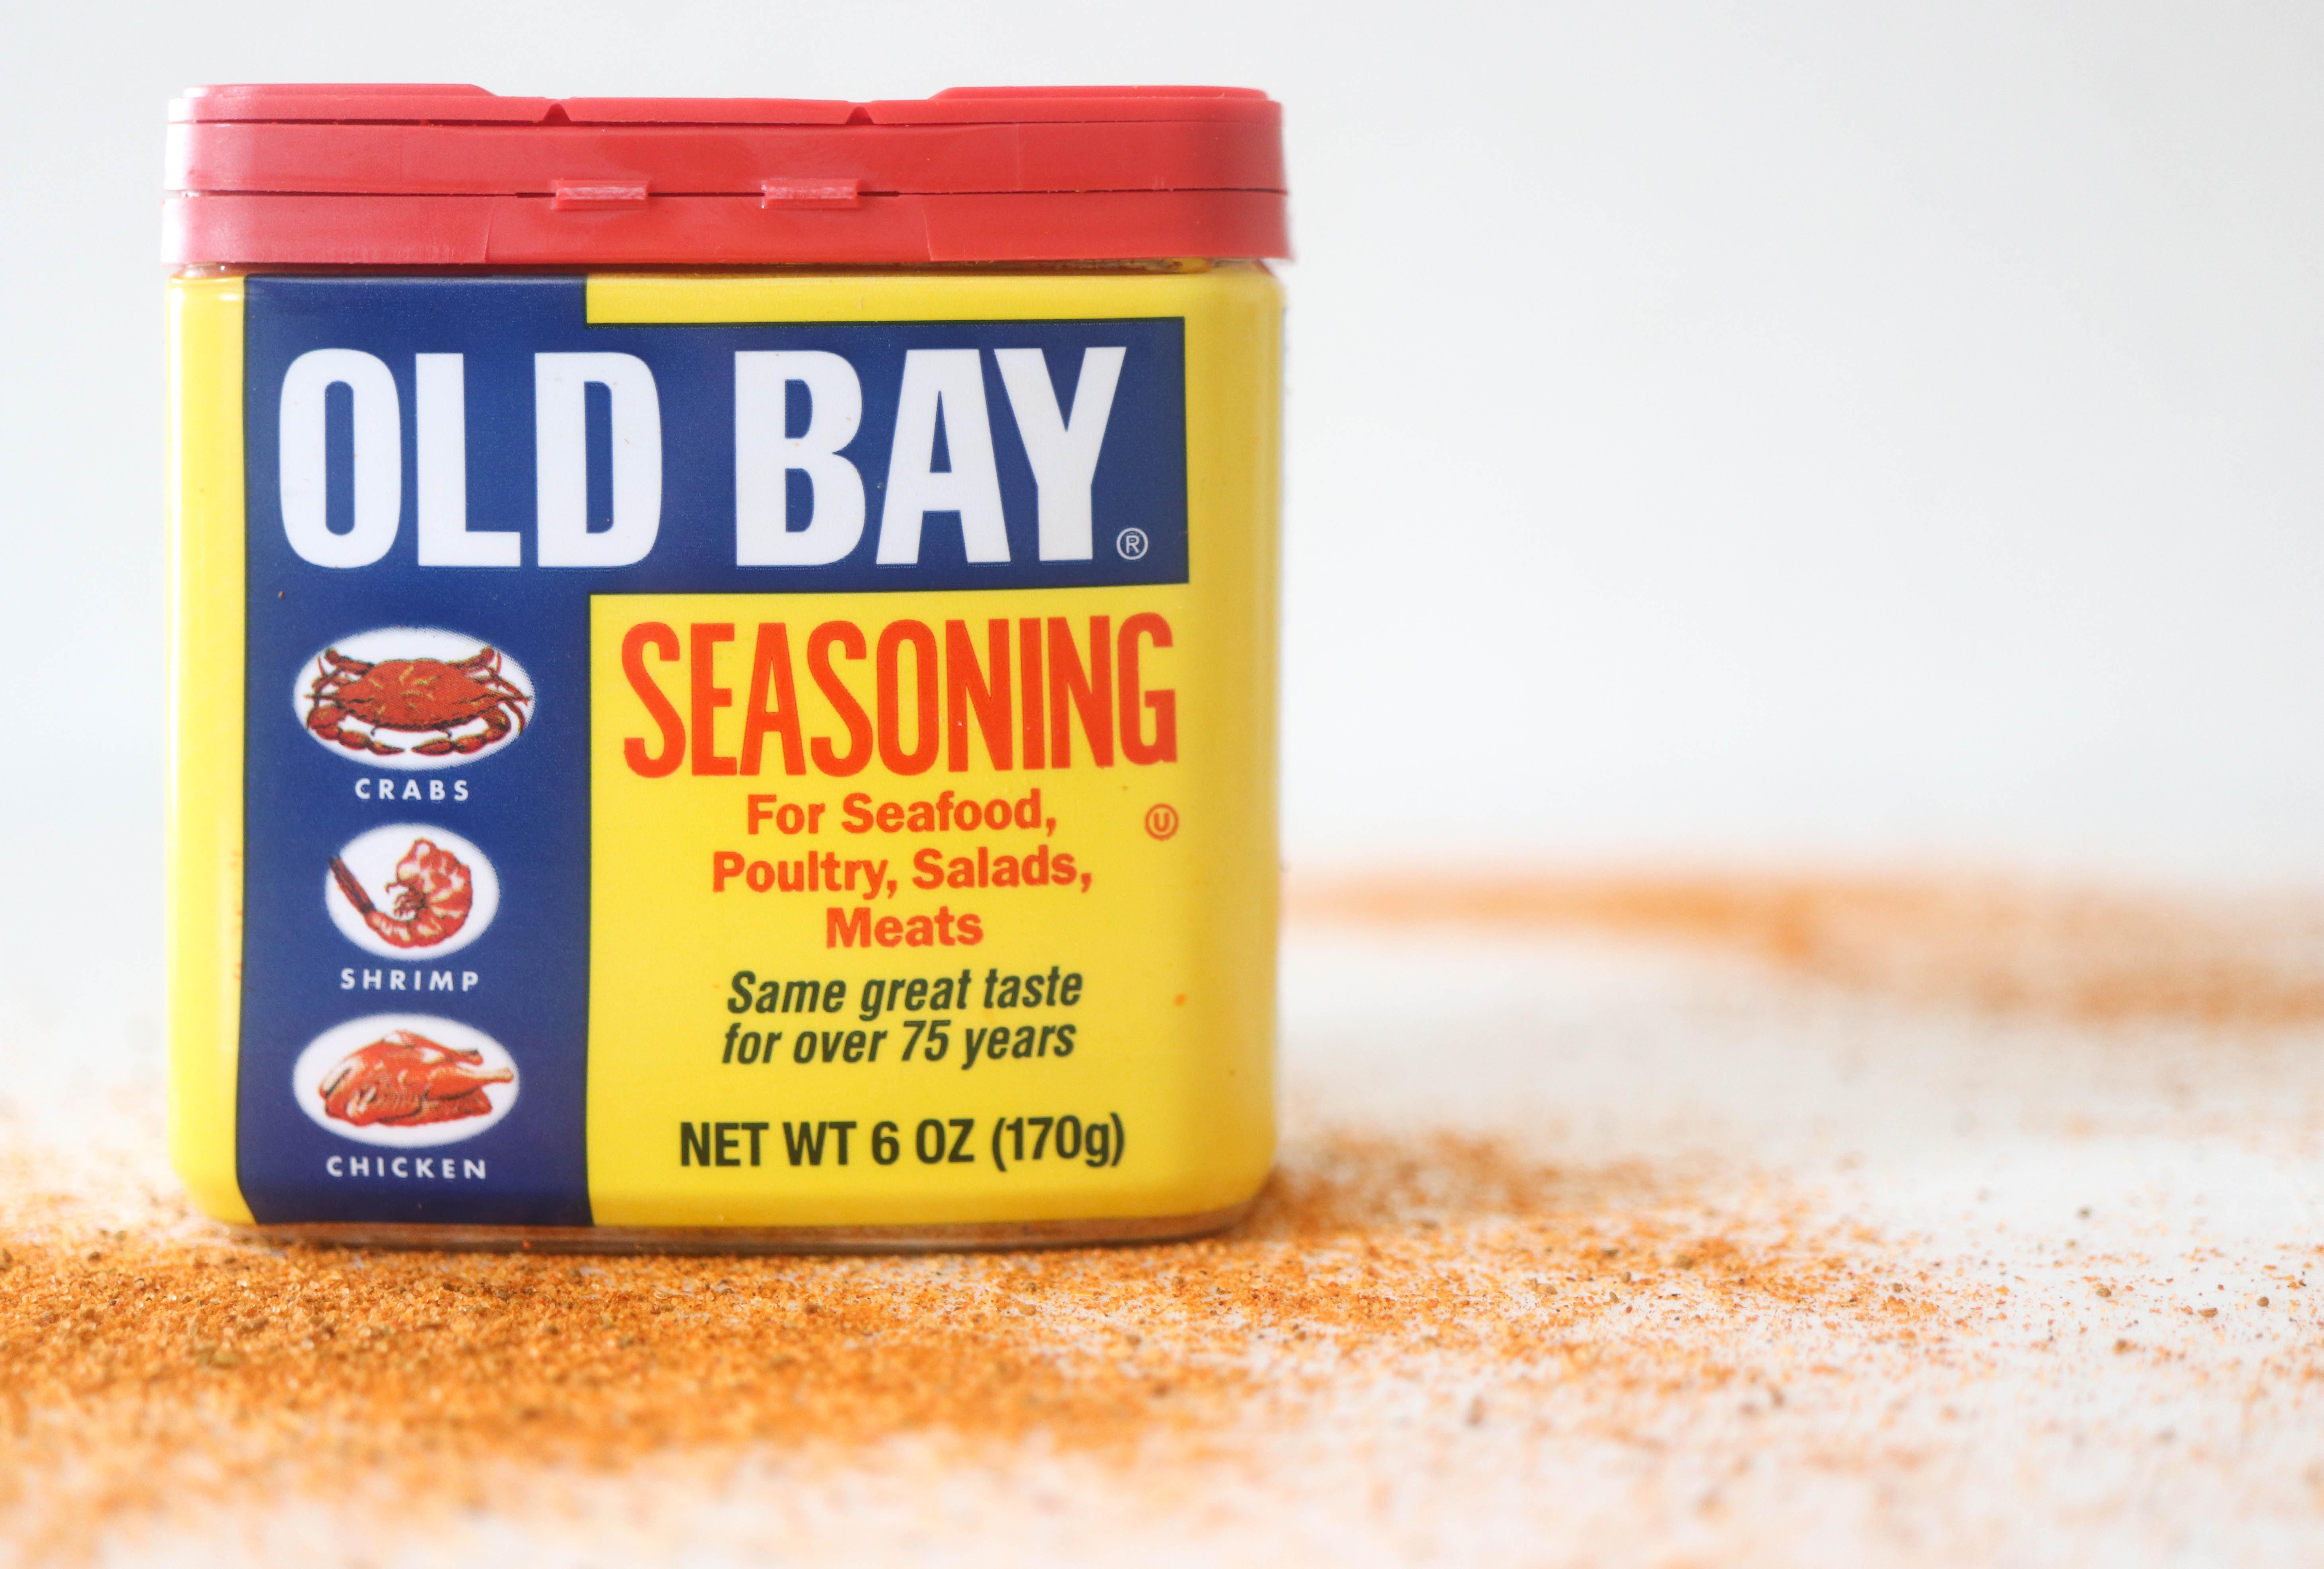 What Is in Old Bay Seasoning That Makes It Taste So Good?